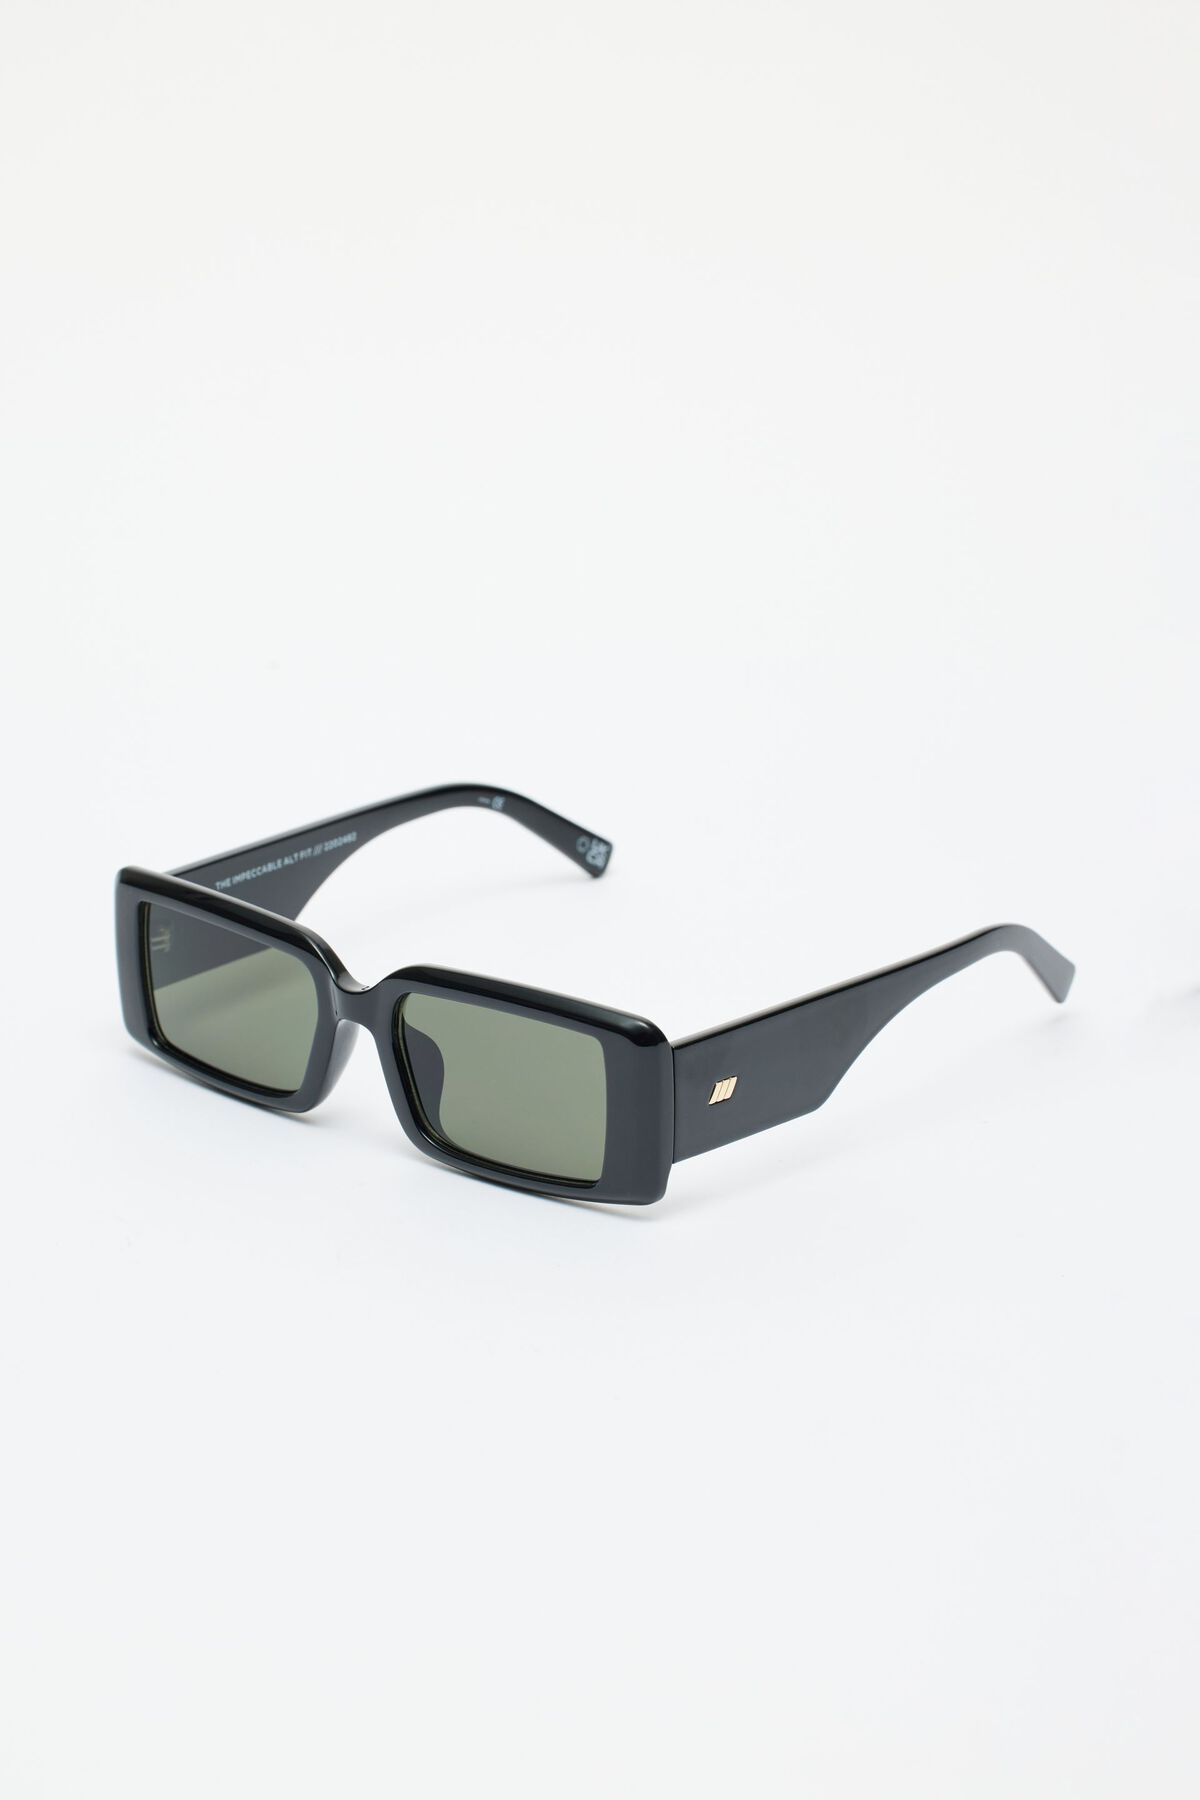 Dynamite LE SPECS | The Impeccable Alt Sunglasses. 3